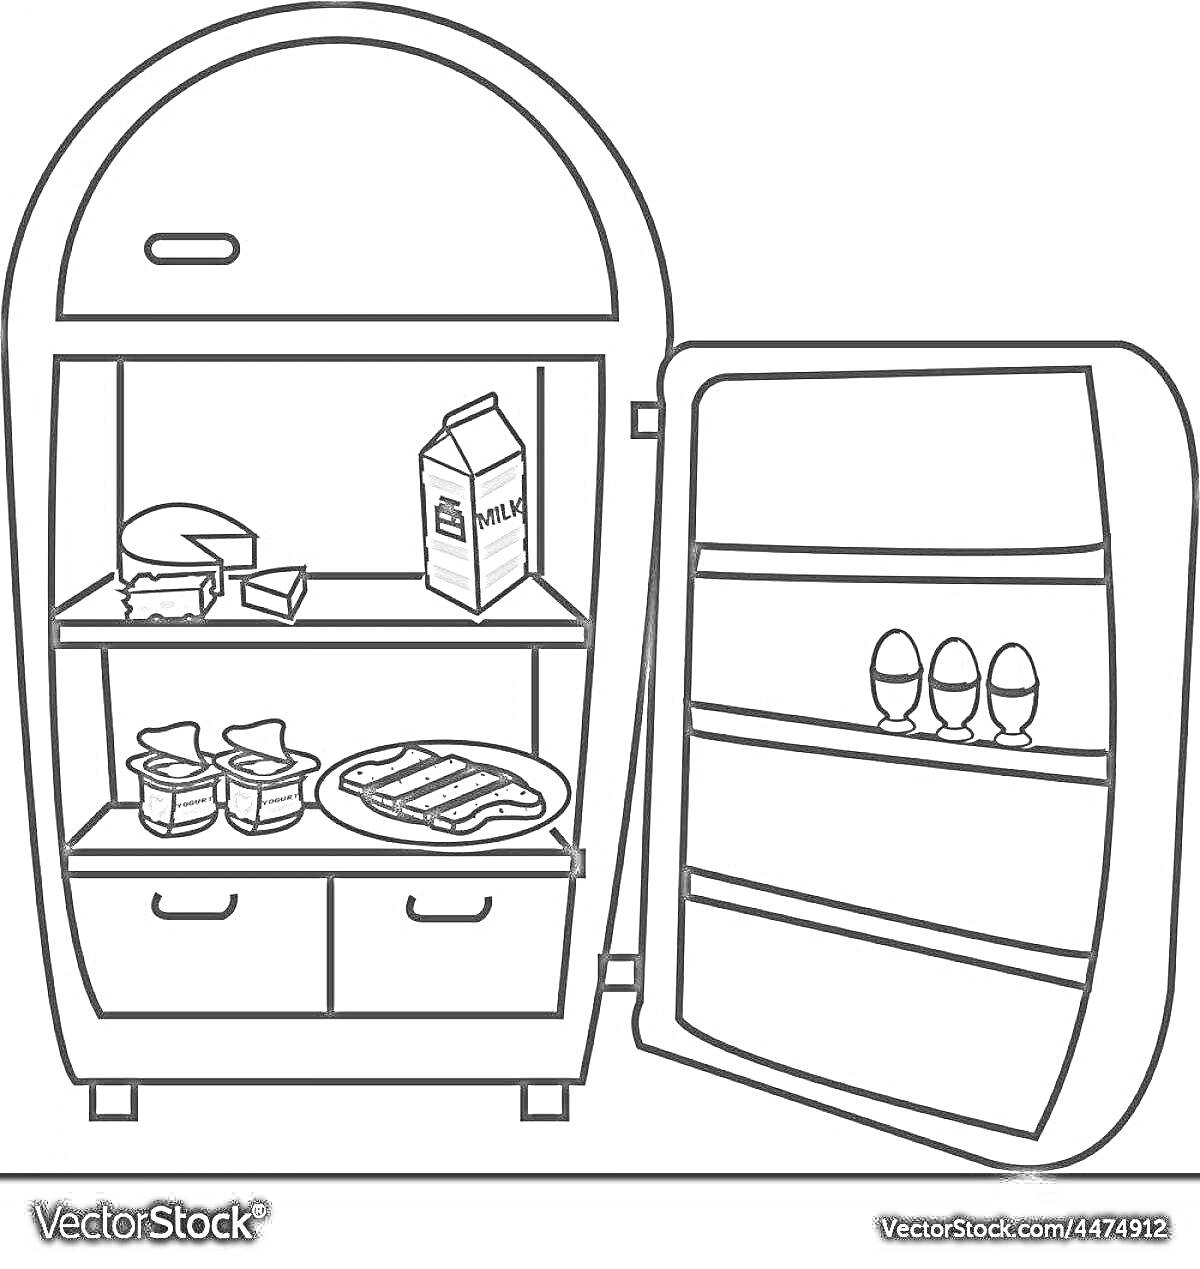 Холодильник с продуктами: молоко, сыр, яйца, йогурт, бекон